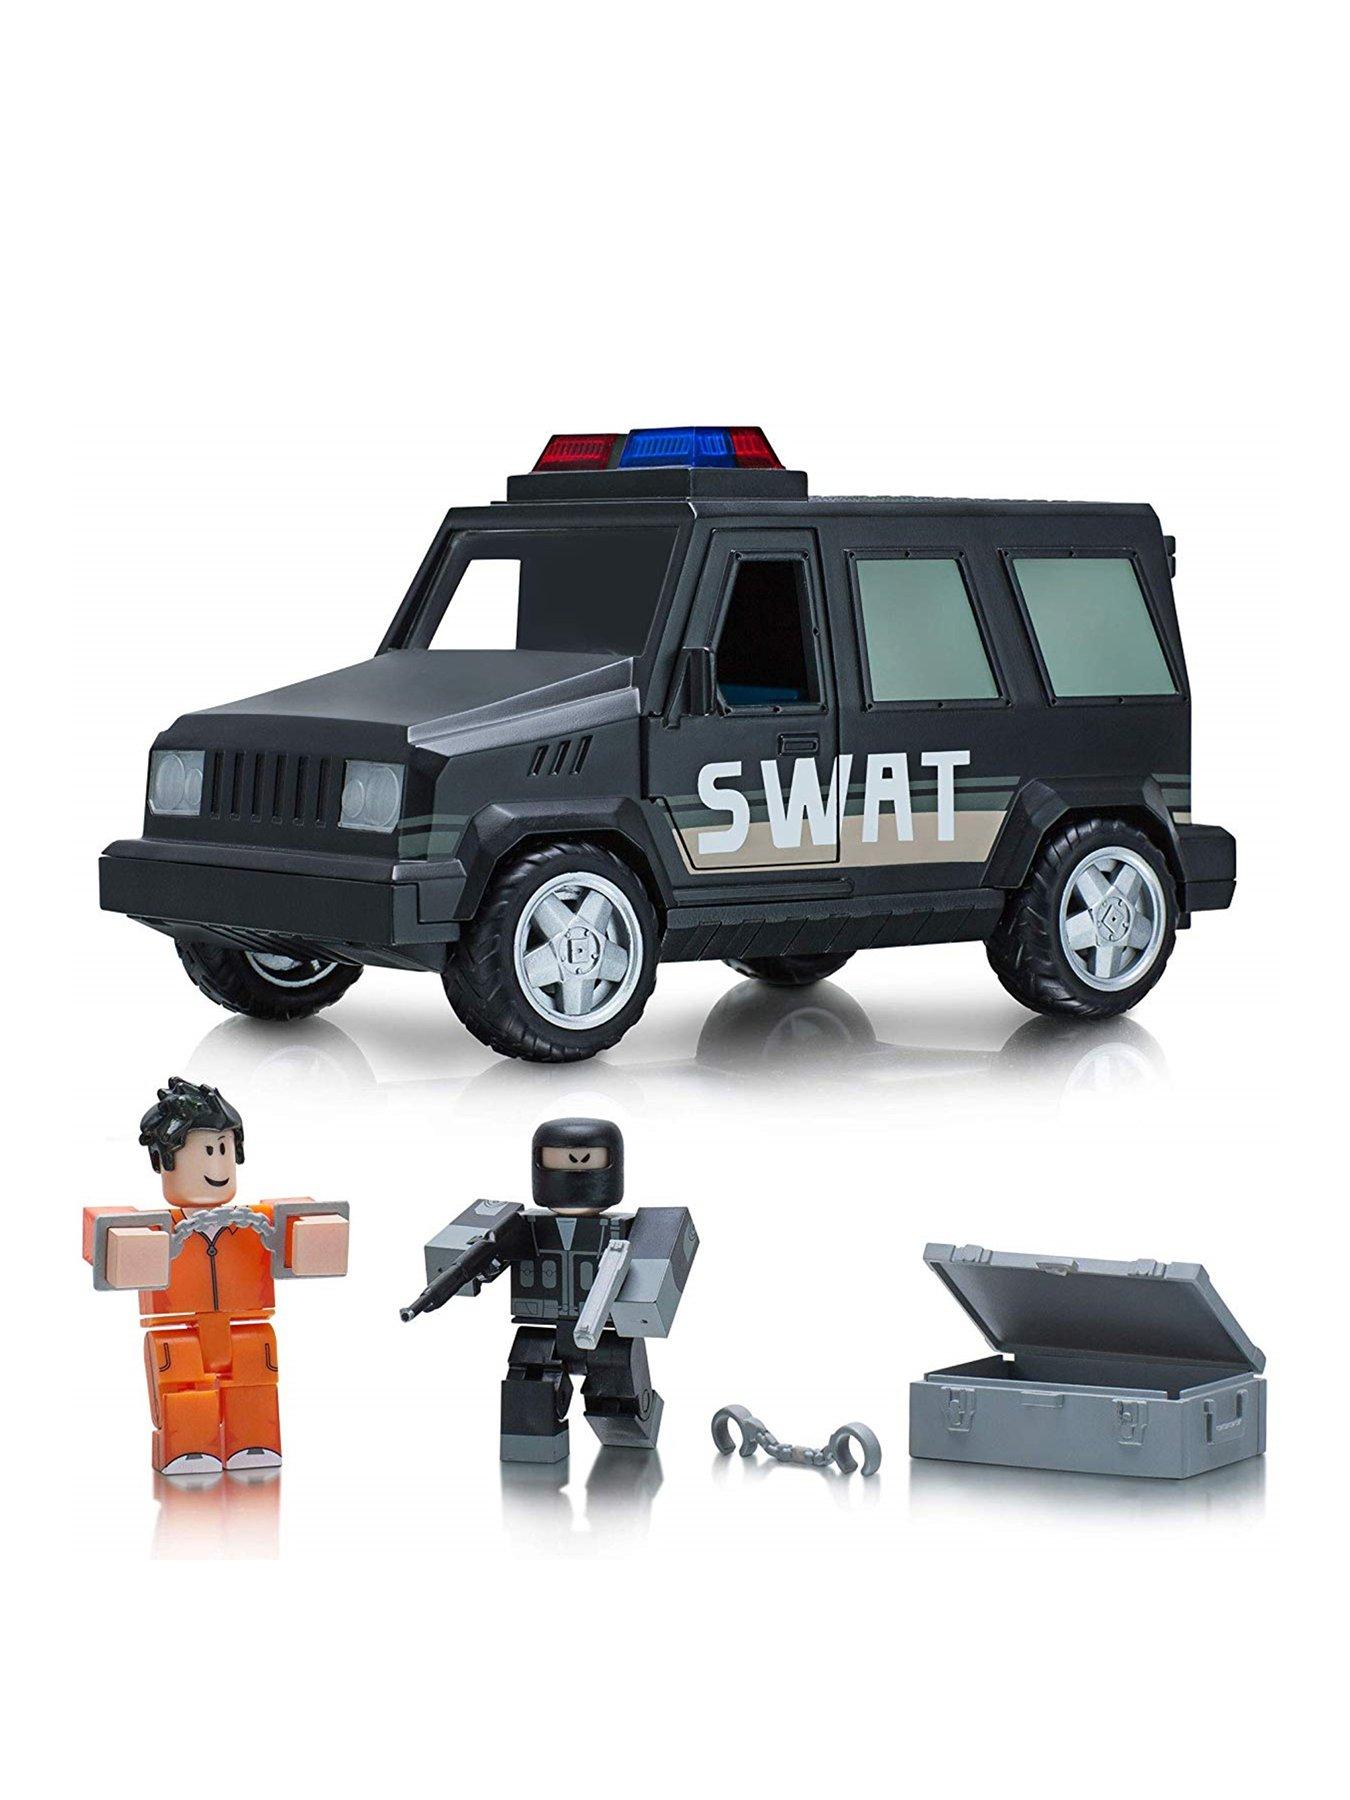 Swat Van Vehicle - update van roblox